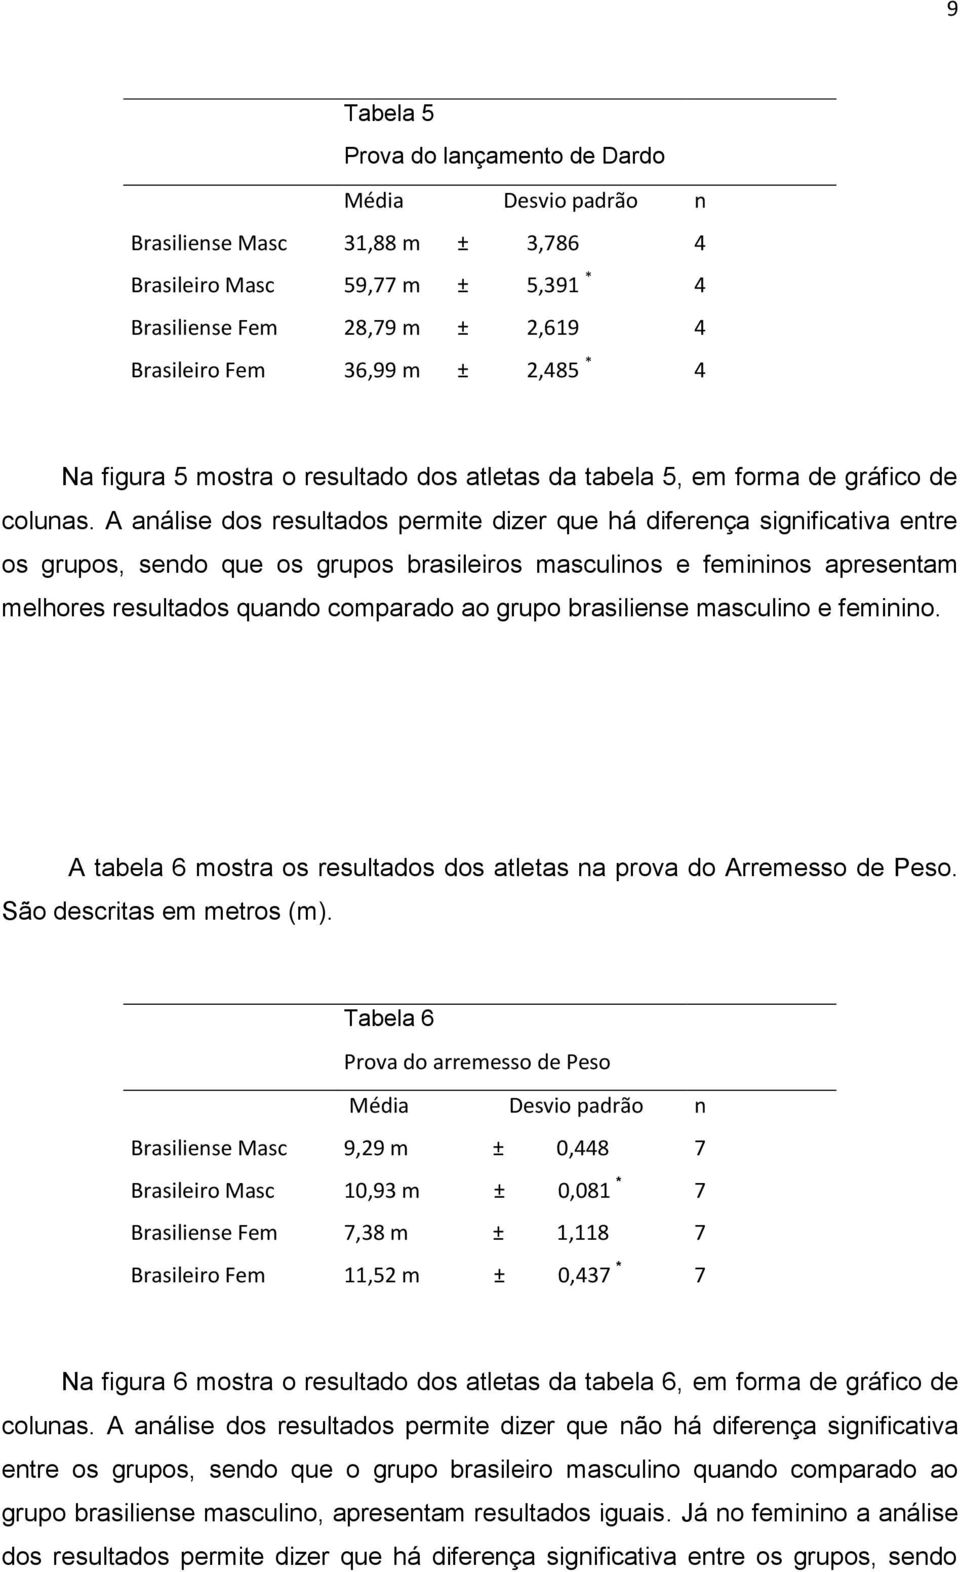 A análise dos resultados permite dizer que há diferença significativa entre os grupos, sendo que os grupos brasileiros masculinos e femininos apresentam melhores resultados quando comparado ao grupo